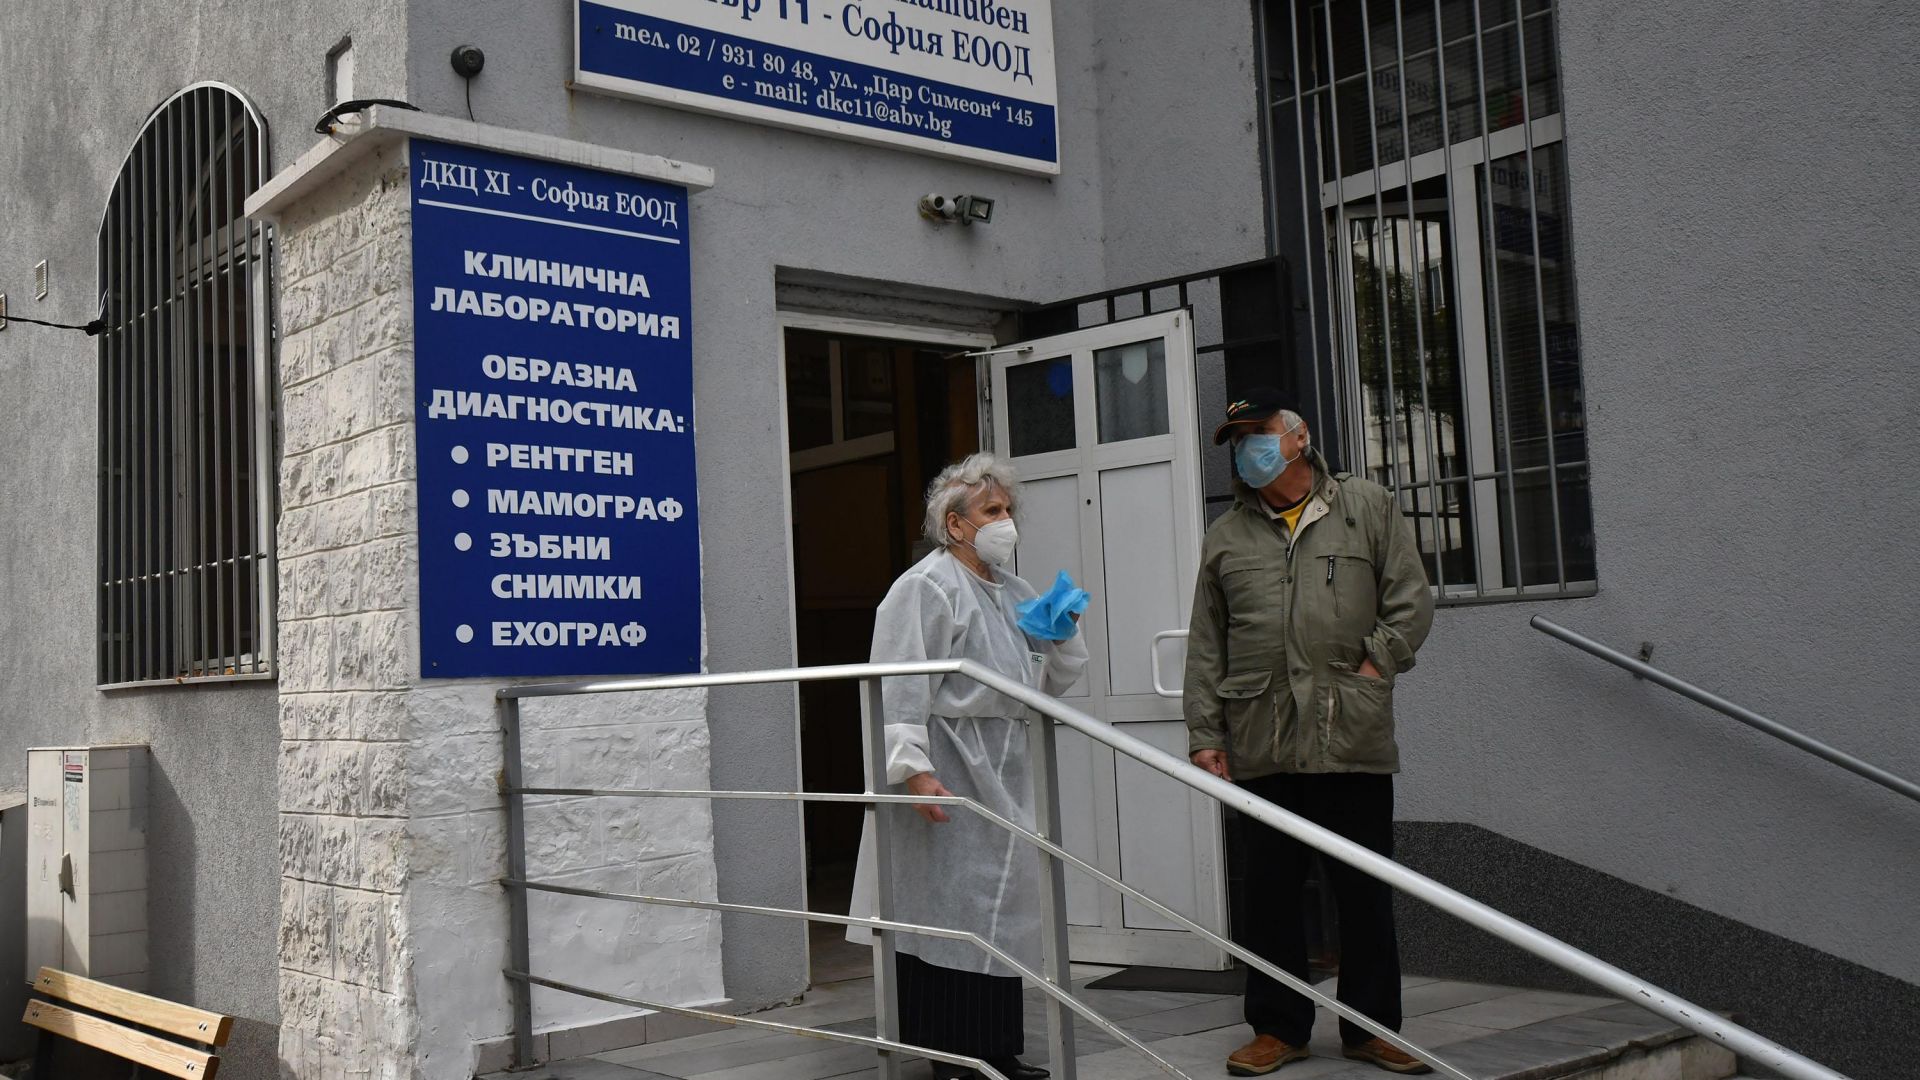 361 положителни теста са регистрирани в Covid зоните на 8-те ДКЦ в София